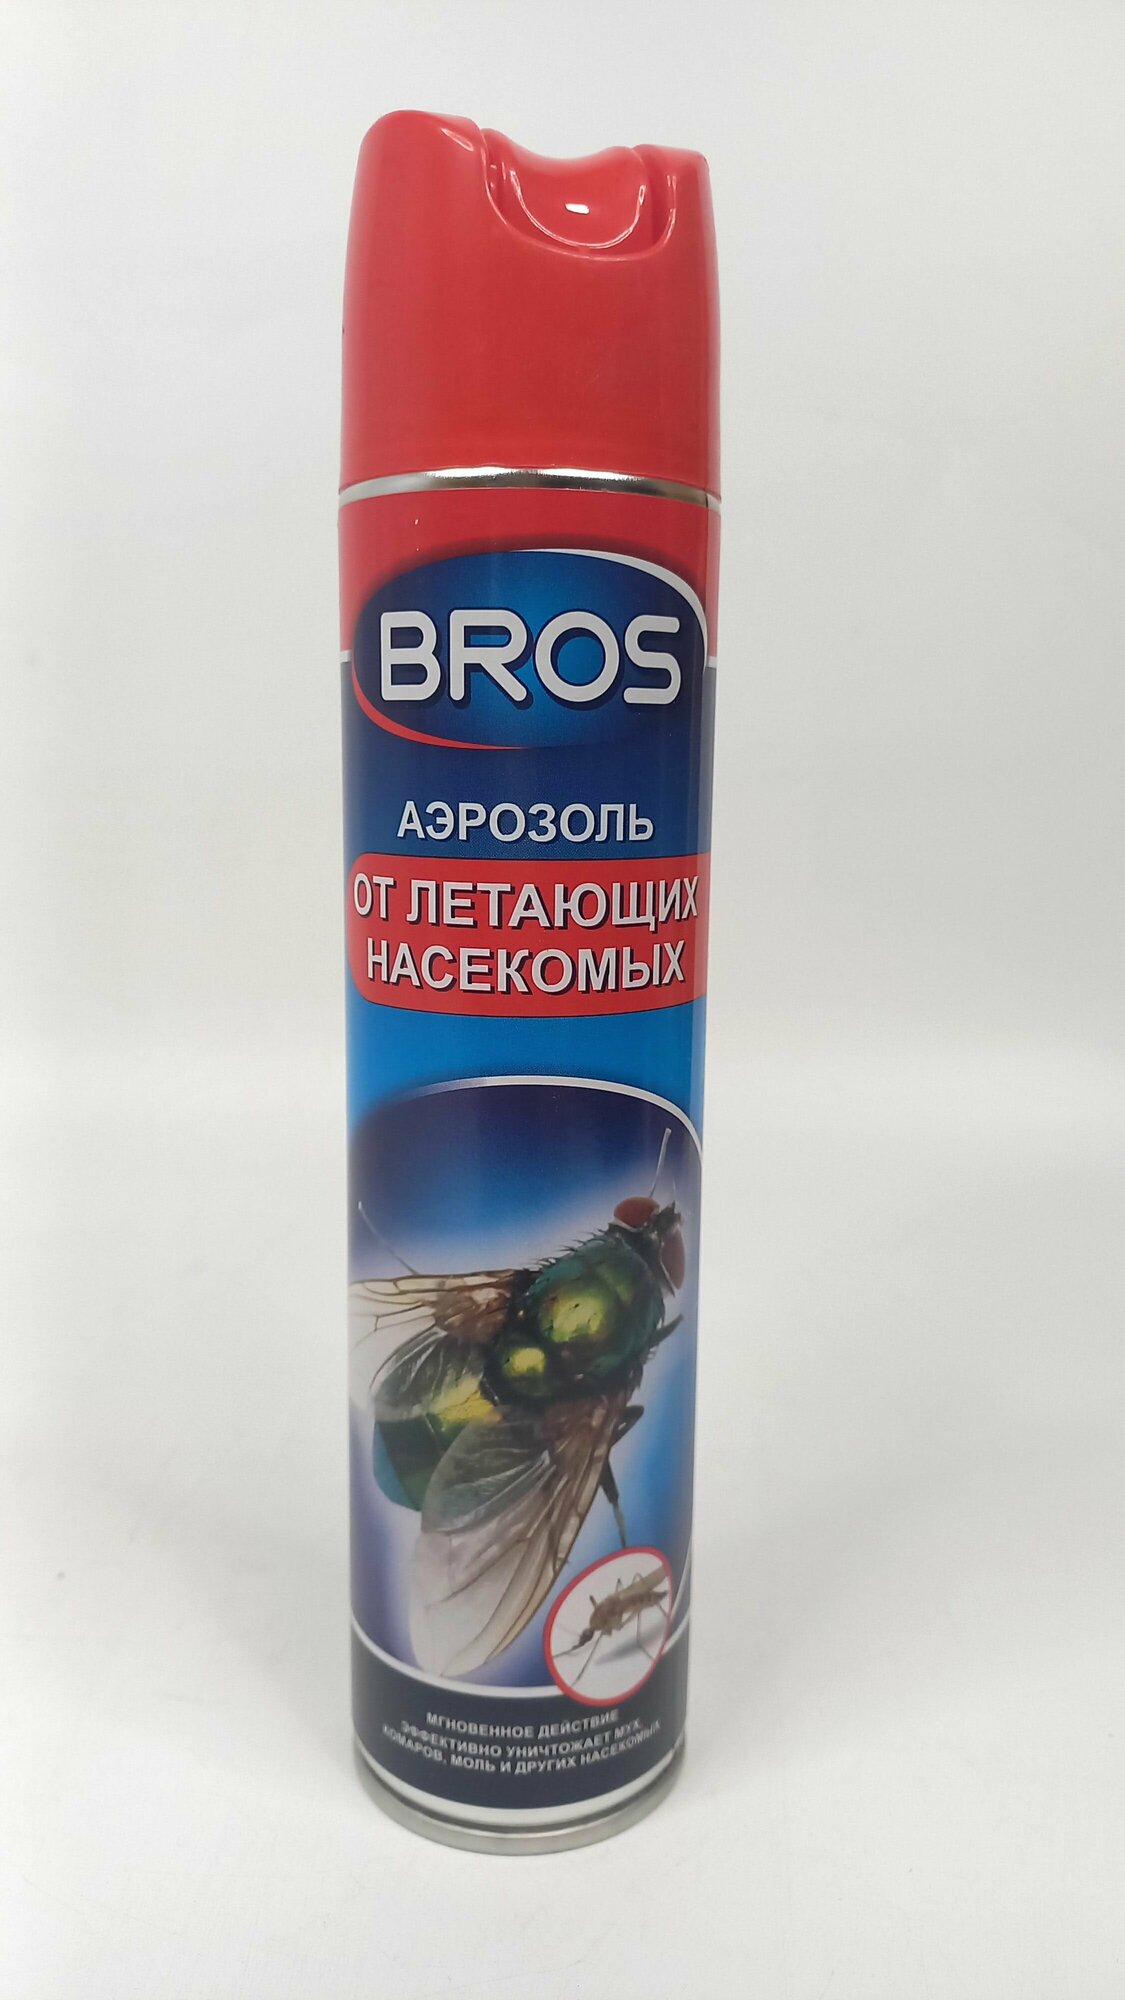 Аэрозоль от летающих насекомых спрей от мух Bros 250 мл